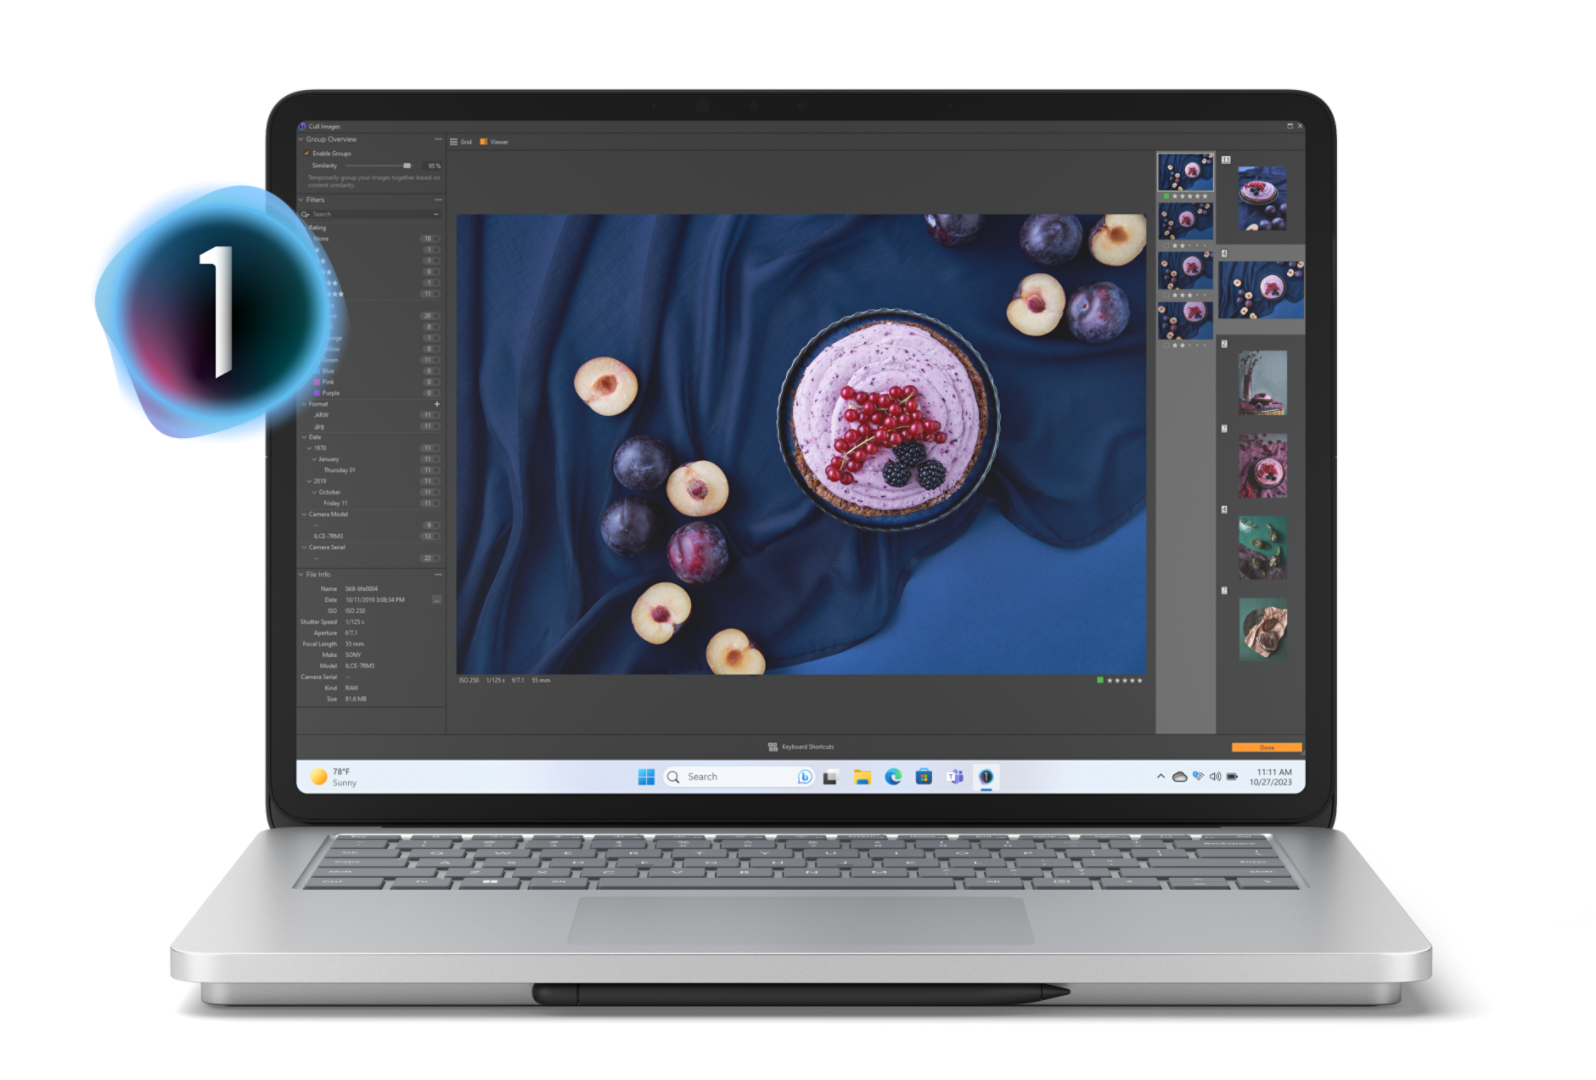 Surface Laptop Studio 2 présentant une tarte aux fruits avec des prunes mûres sur une nappe bleu foncé sur l’écran de l’appareil avec des éléments du menu Capture One apparaissant sur l’écran.